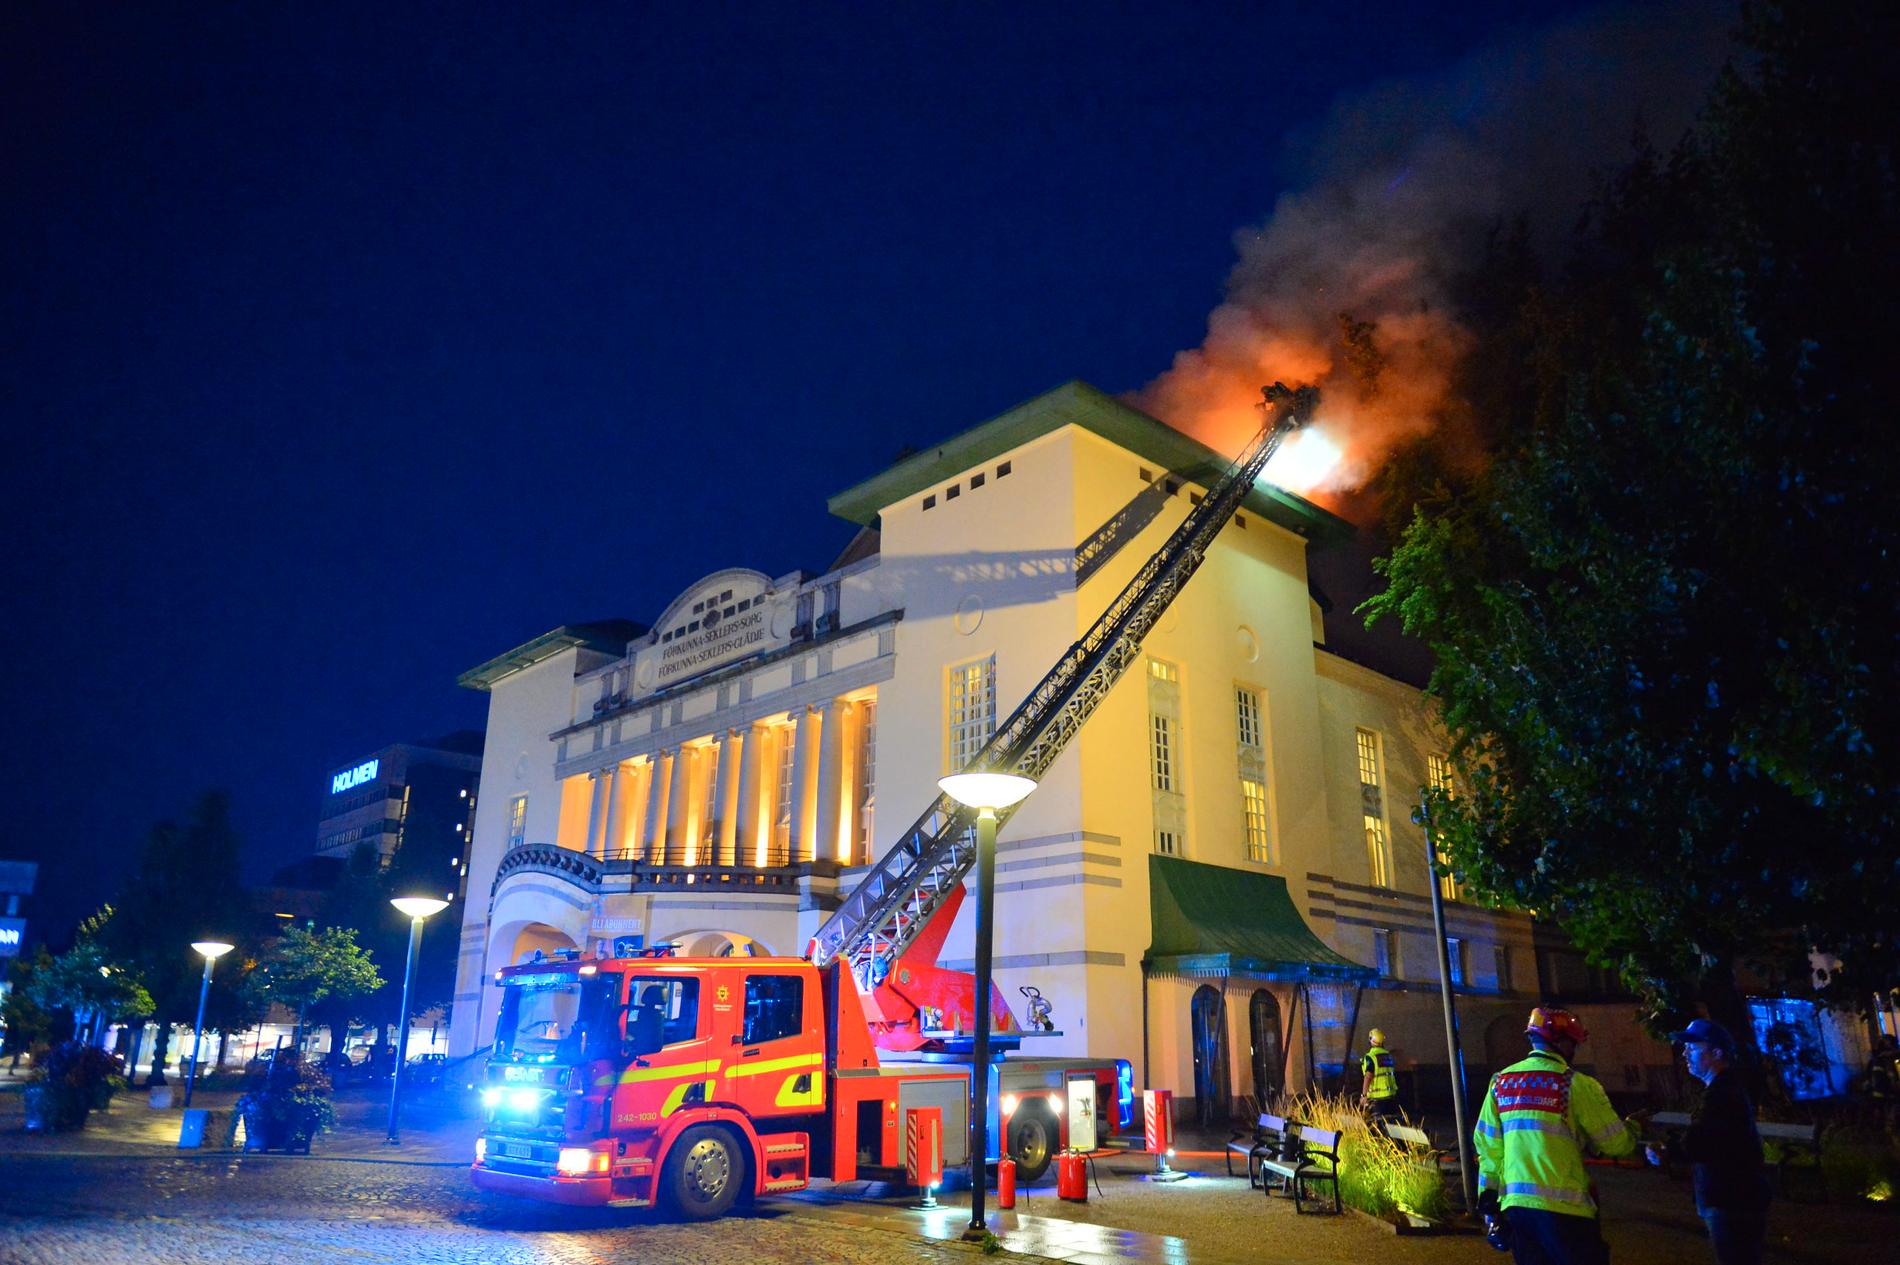 En kraftig brand har brutit ut i Stora teatern i Norrköping.